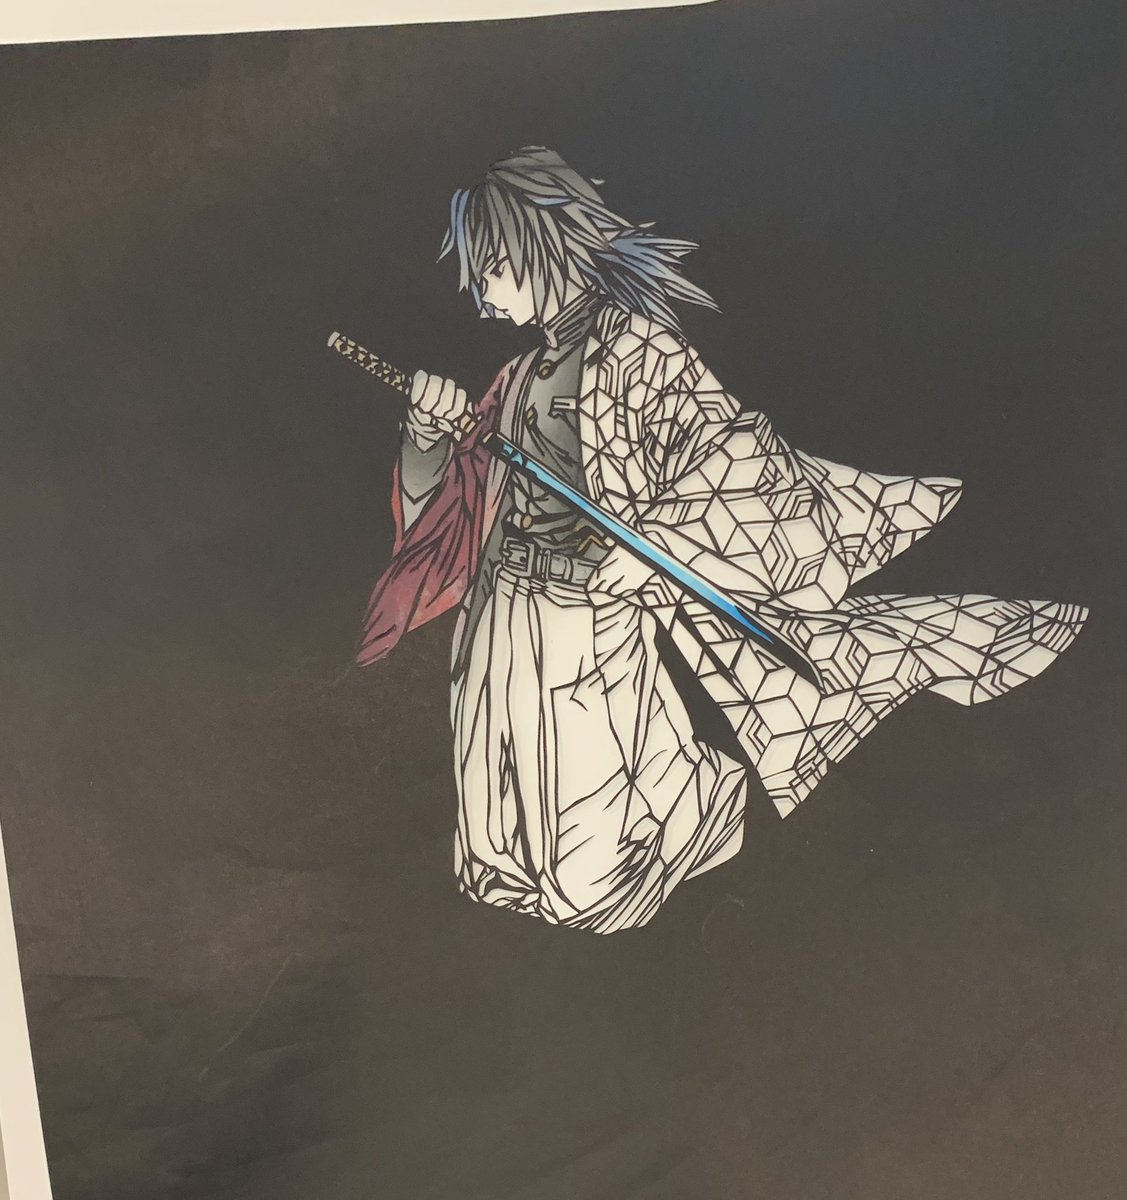 冨岡義勇 「途中経過。
羽織の色付け頑張ろう? 」|さかさまつげ(切り絵)のイラスト